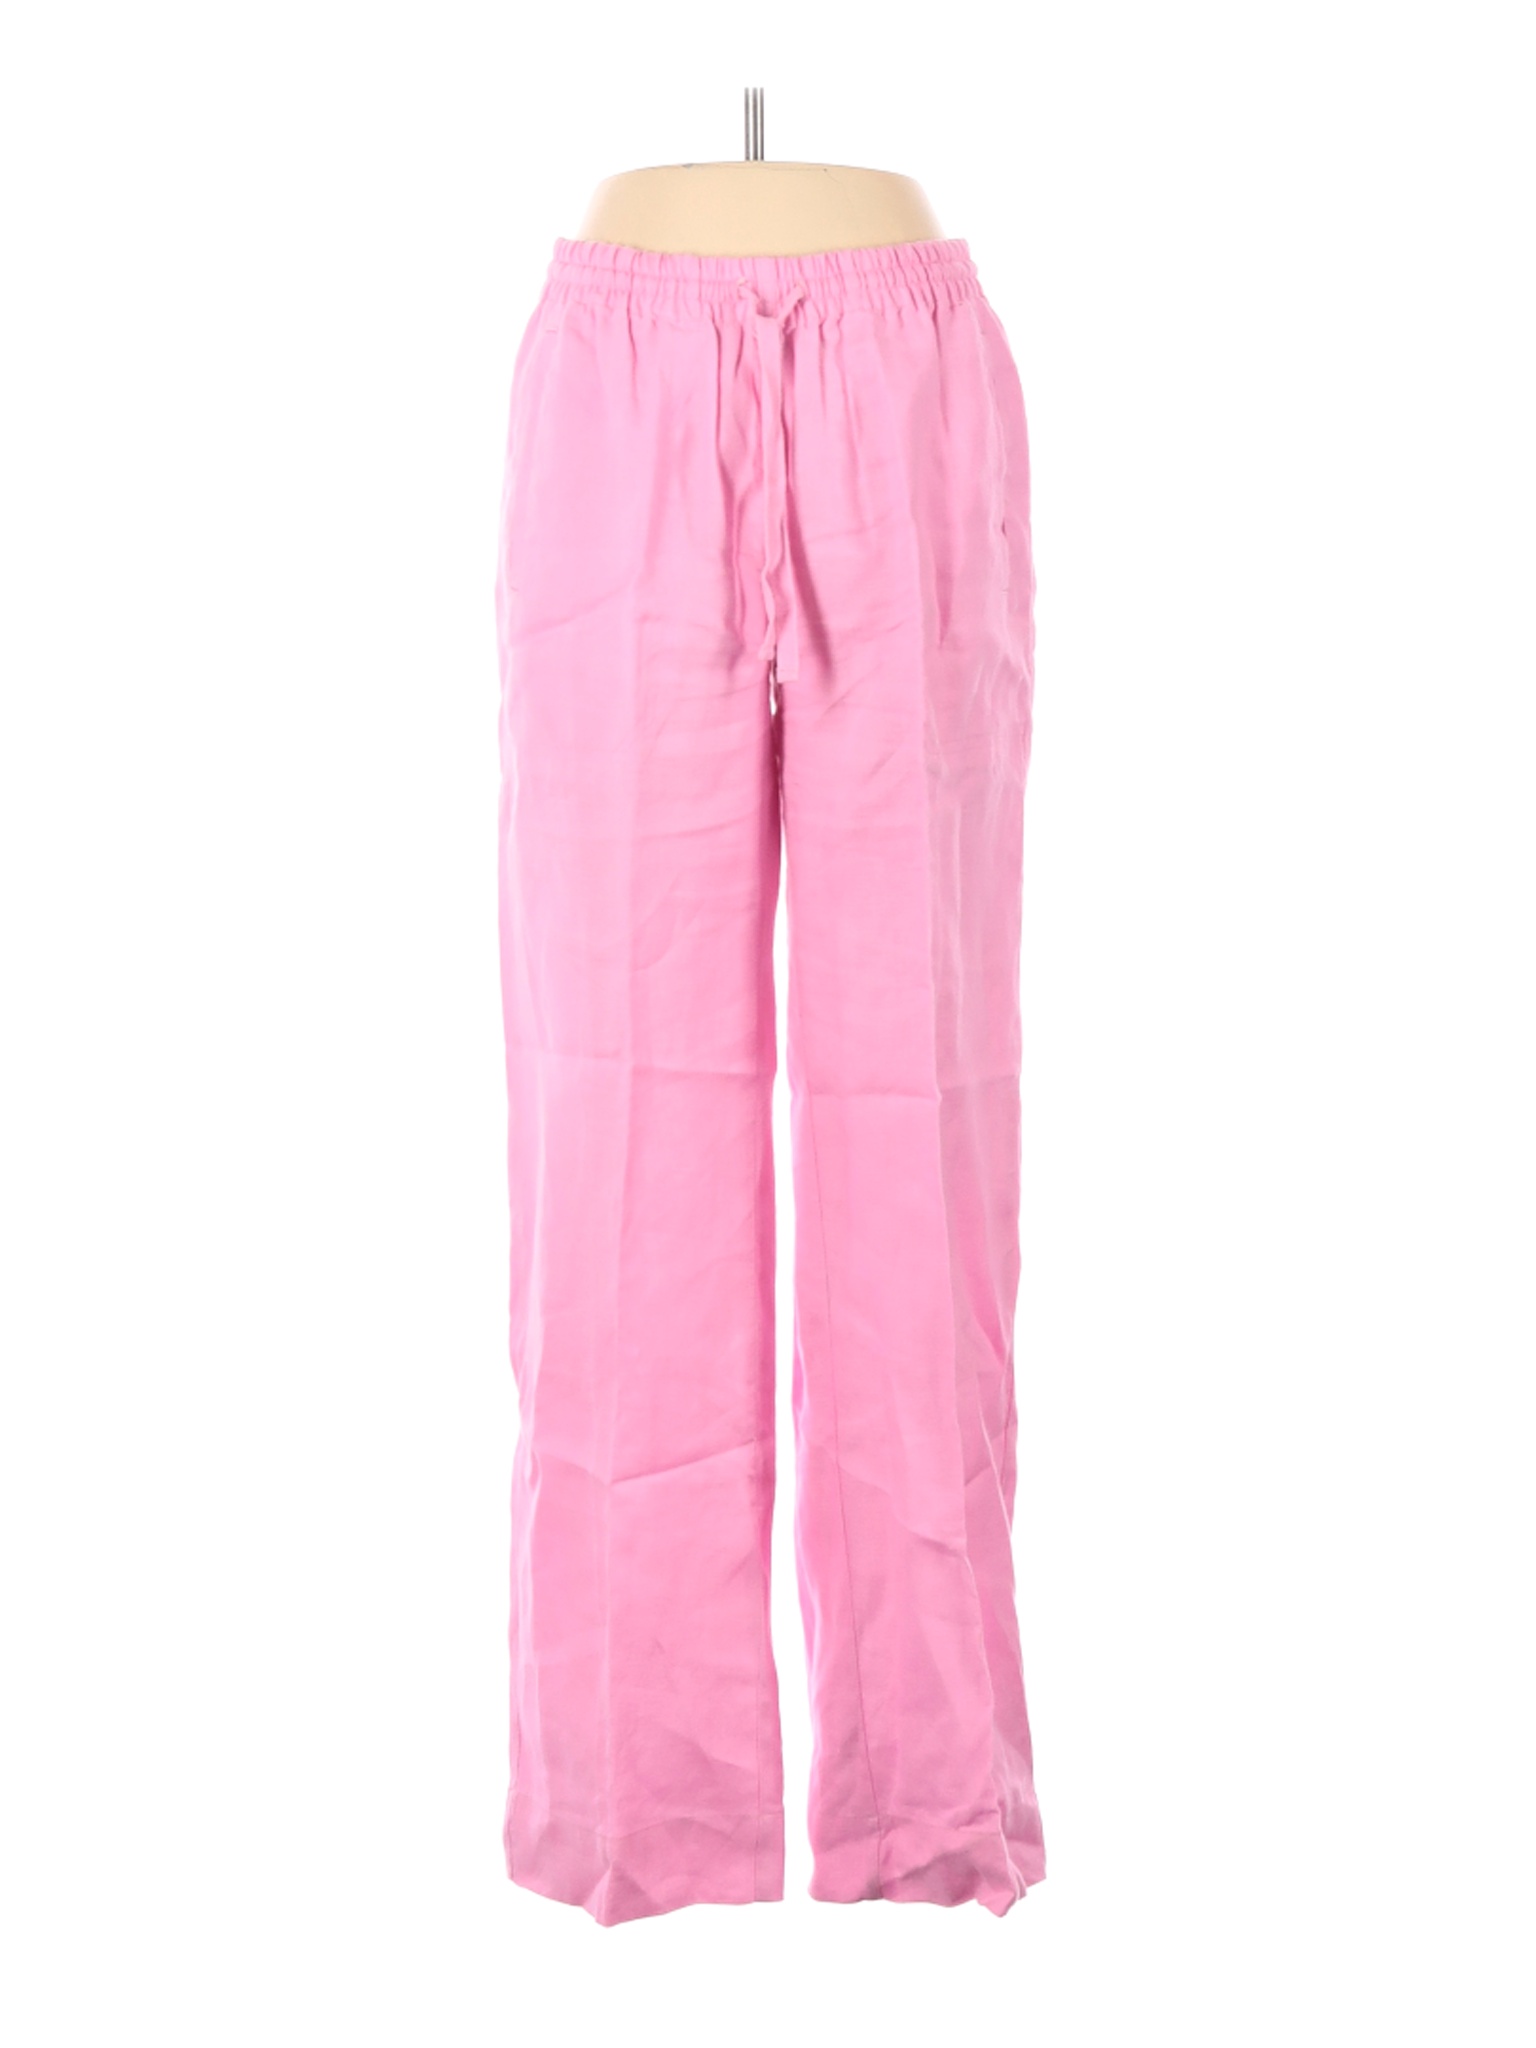 Crown & Ivy Women Pink Linen Pants XS | eBay